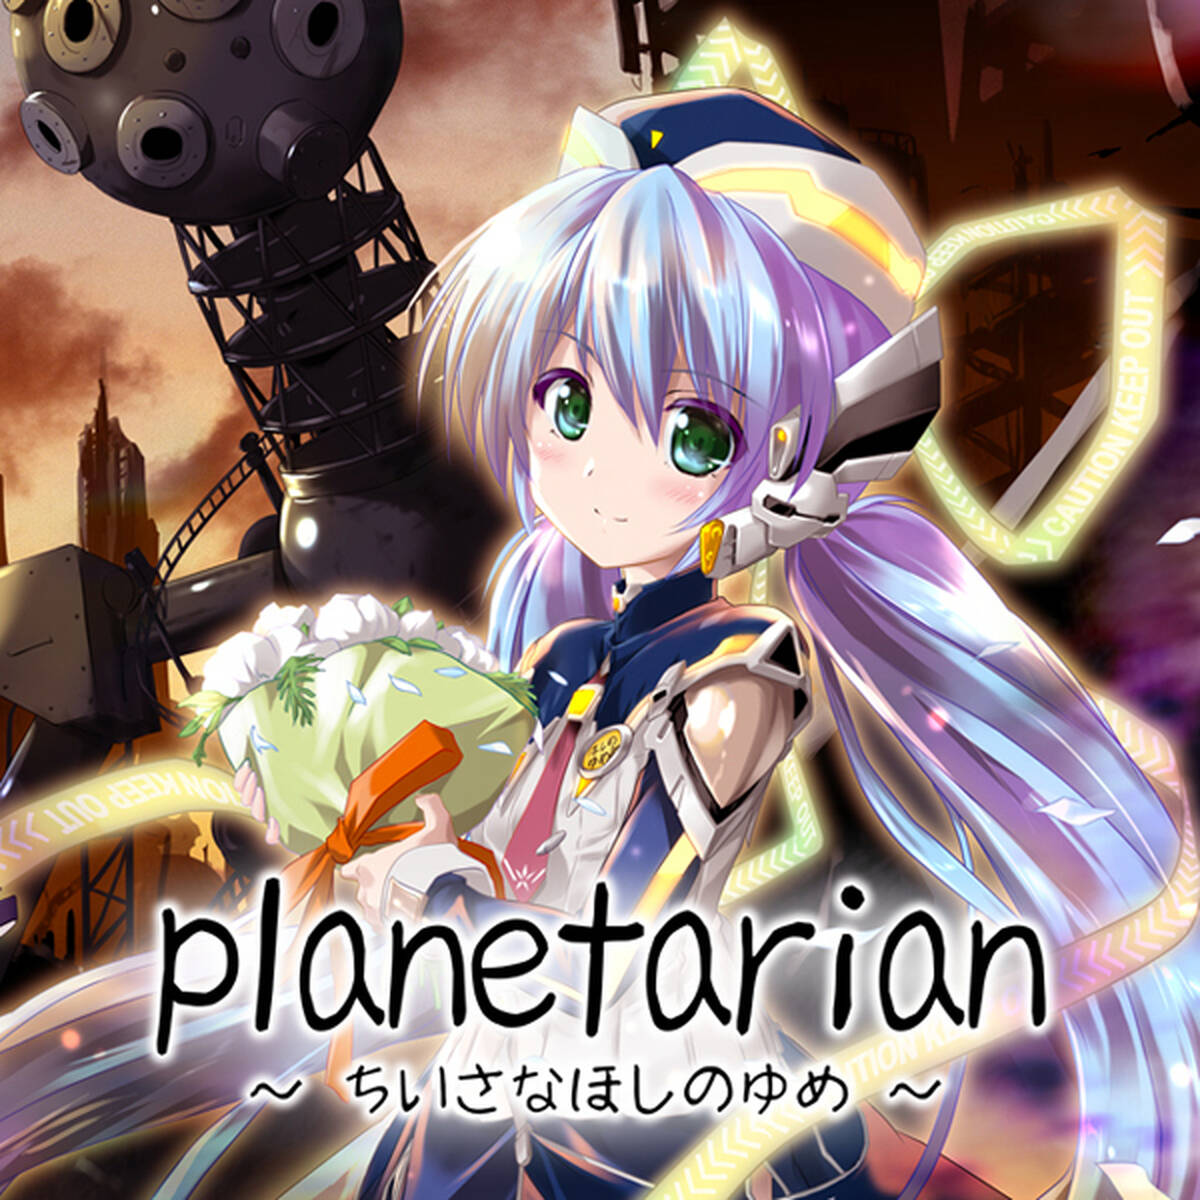 Nintendo Switch Planetarian ちいさなほしのゆめ 1月31日配信